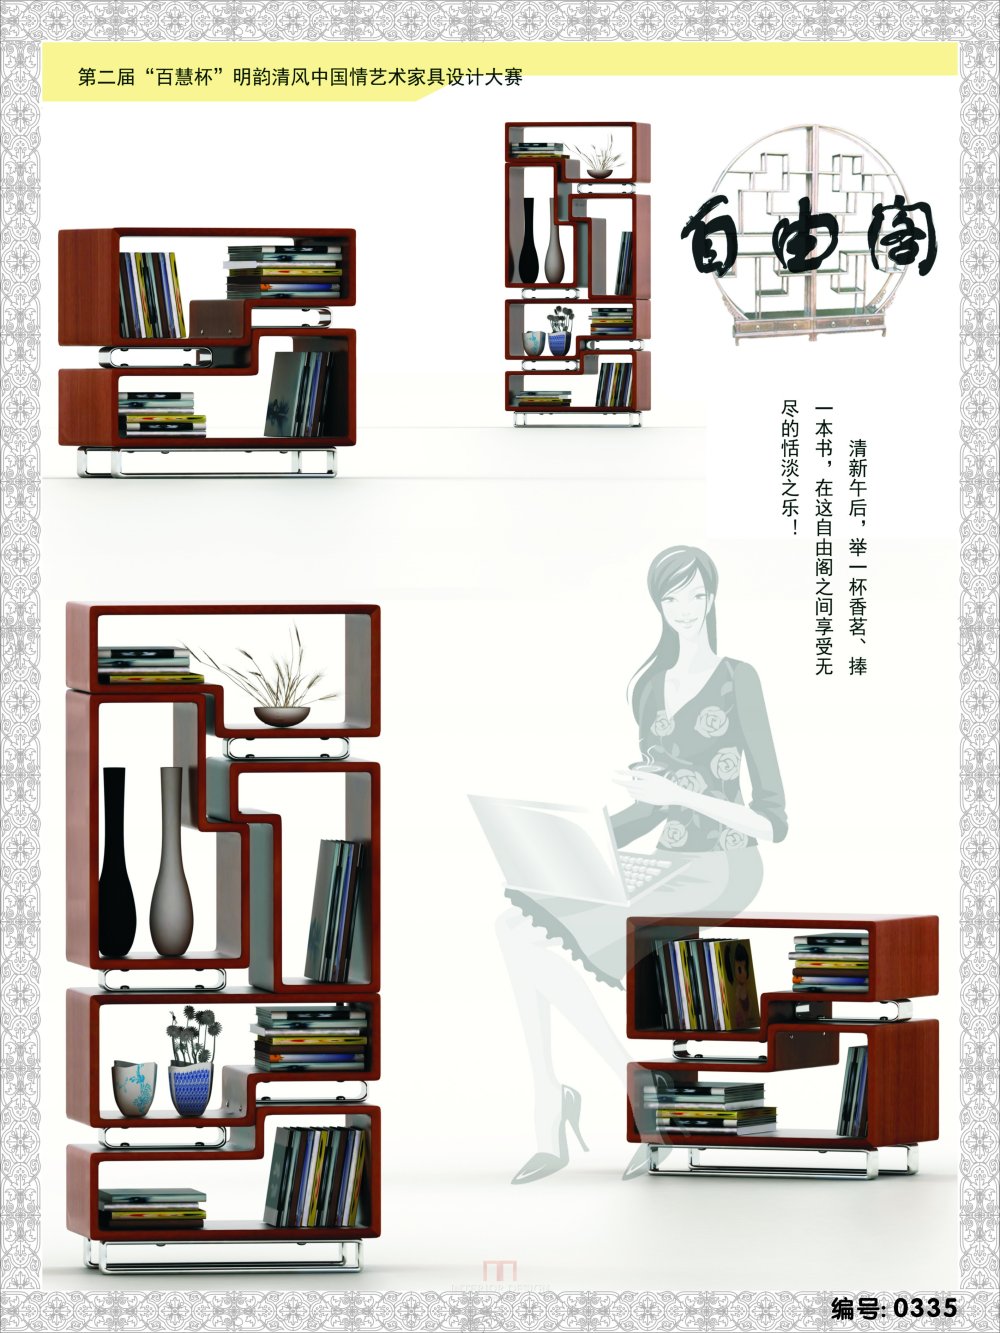 “百慧杯”中国家具设计大赛作品_0335.jpg